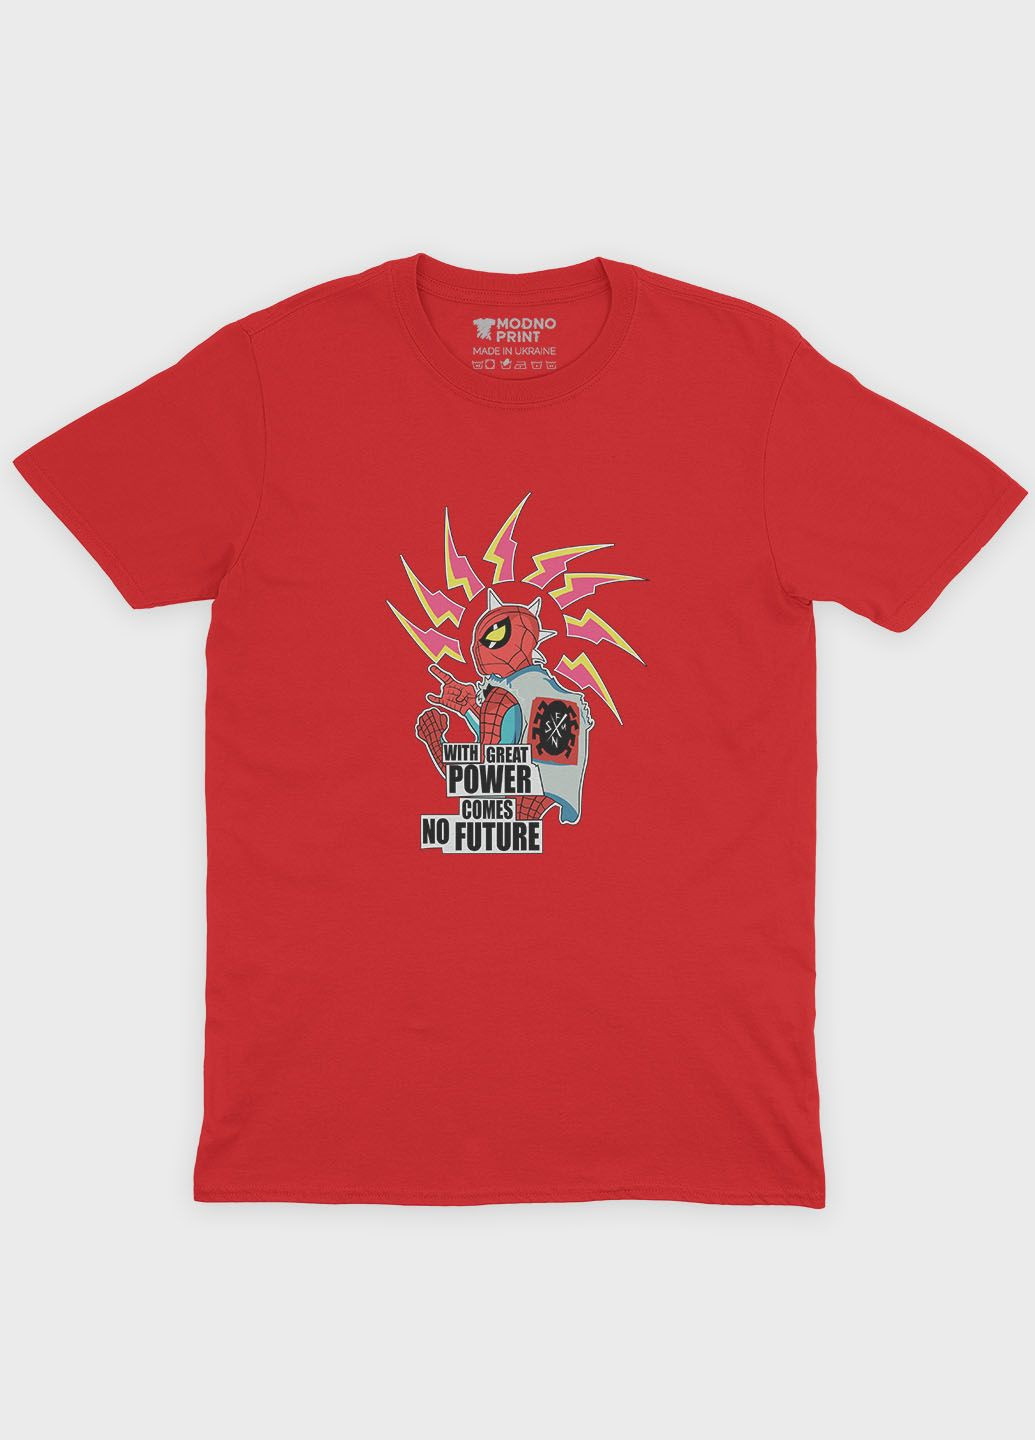 Красная демисезонная футболка для мальчика с принтом супергероя - человек-паук (ts001-1-sre-006-014-018-b) Modno